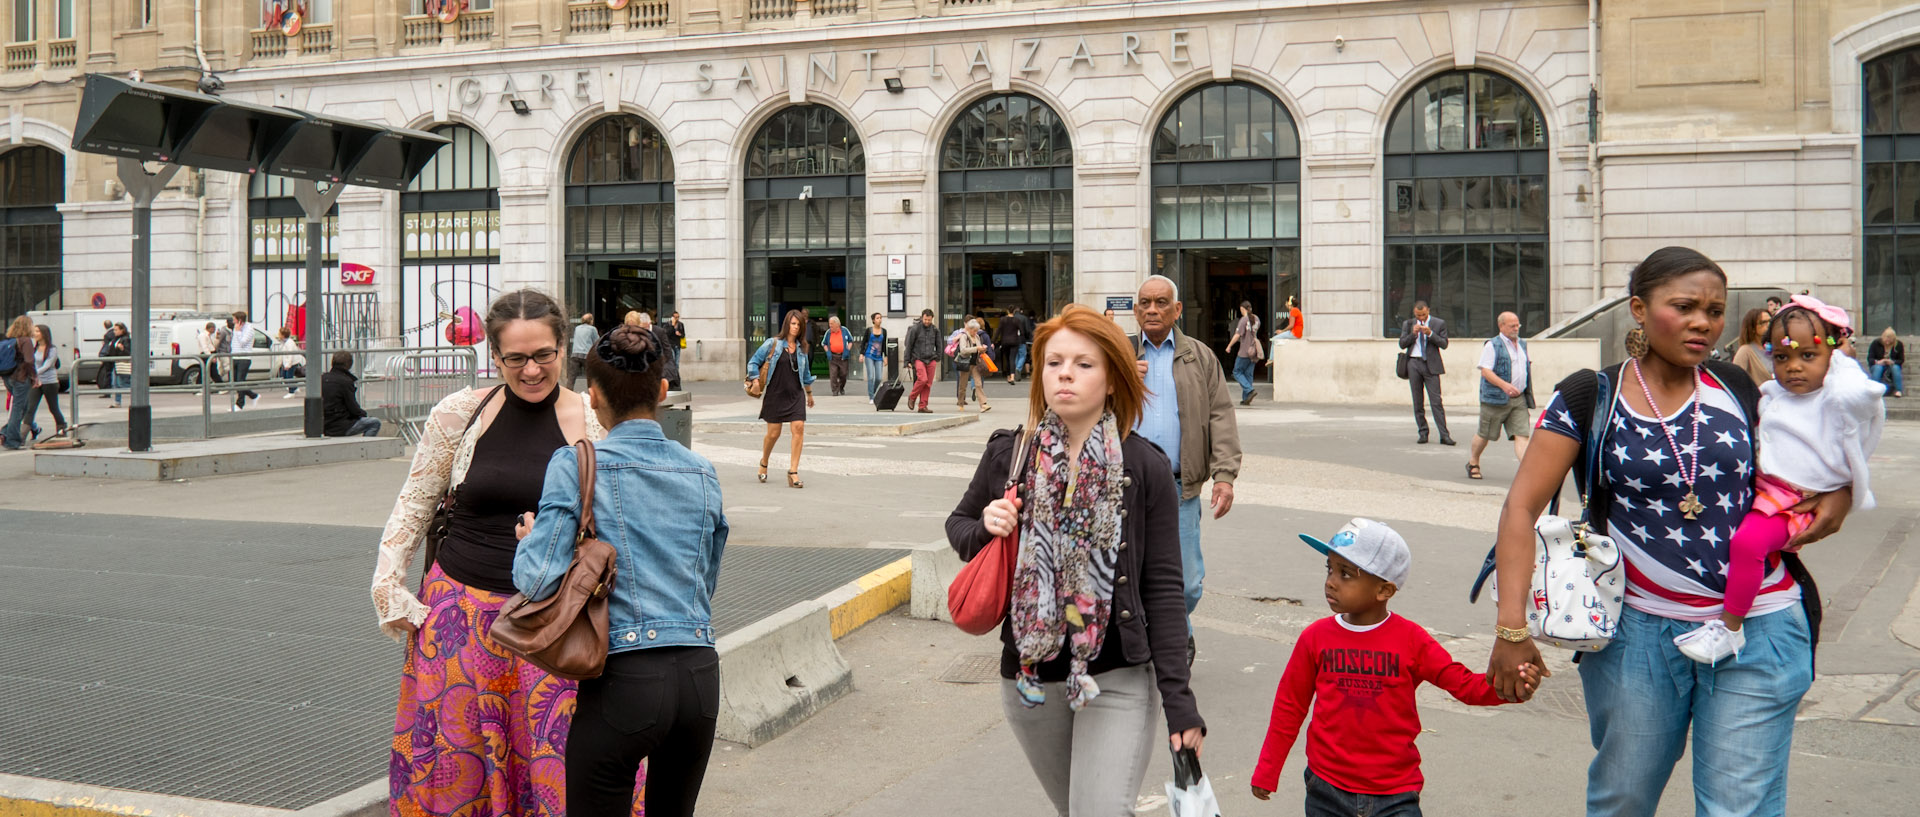 Passants devant la gare Saint-Lazare, à Paris.